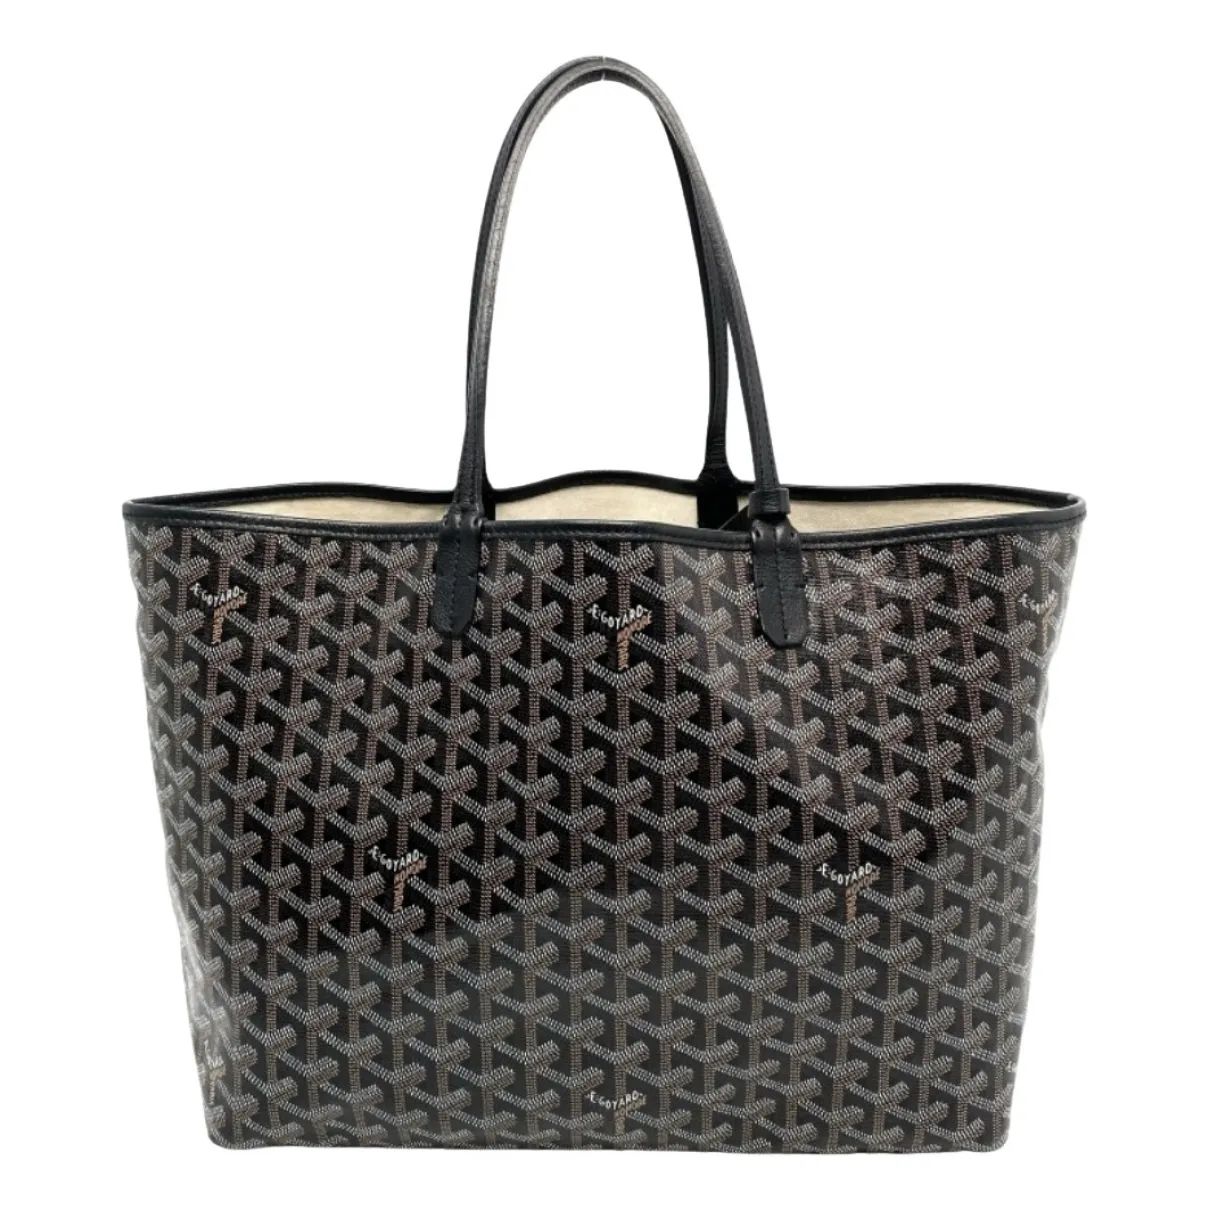 Saint-Louis Goyard Handbags for Women - Vestiaire Collective | Vestiaire Collective (Global)